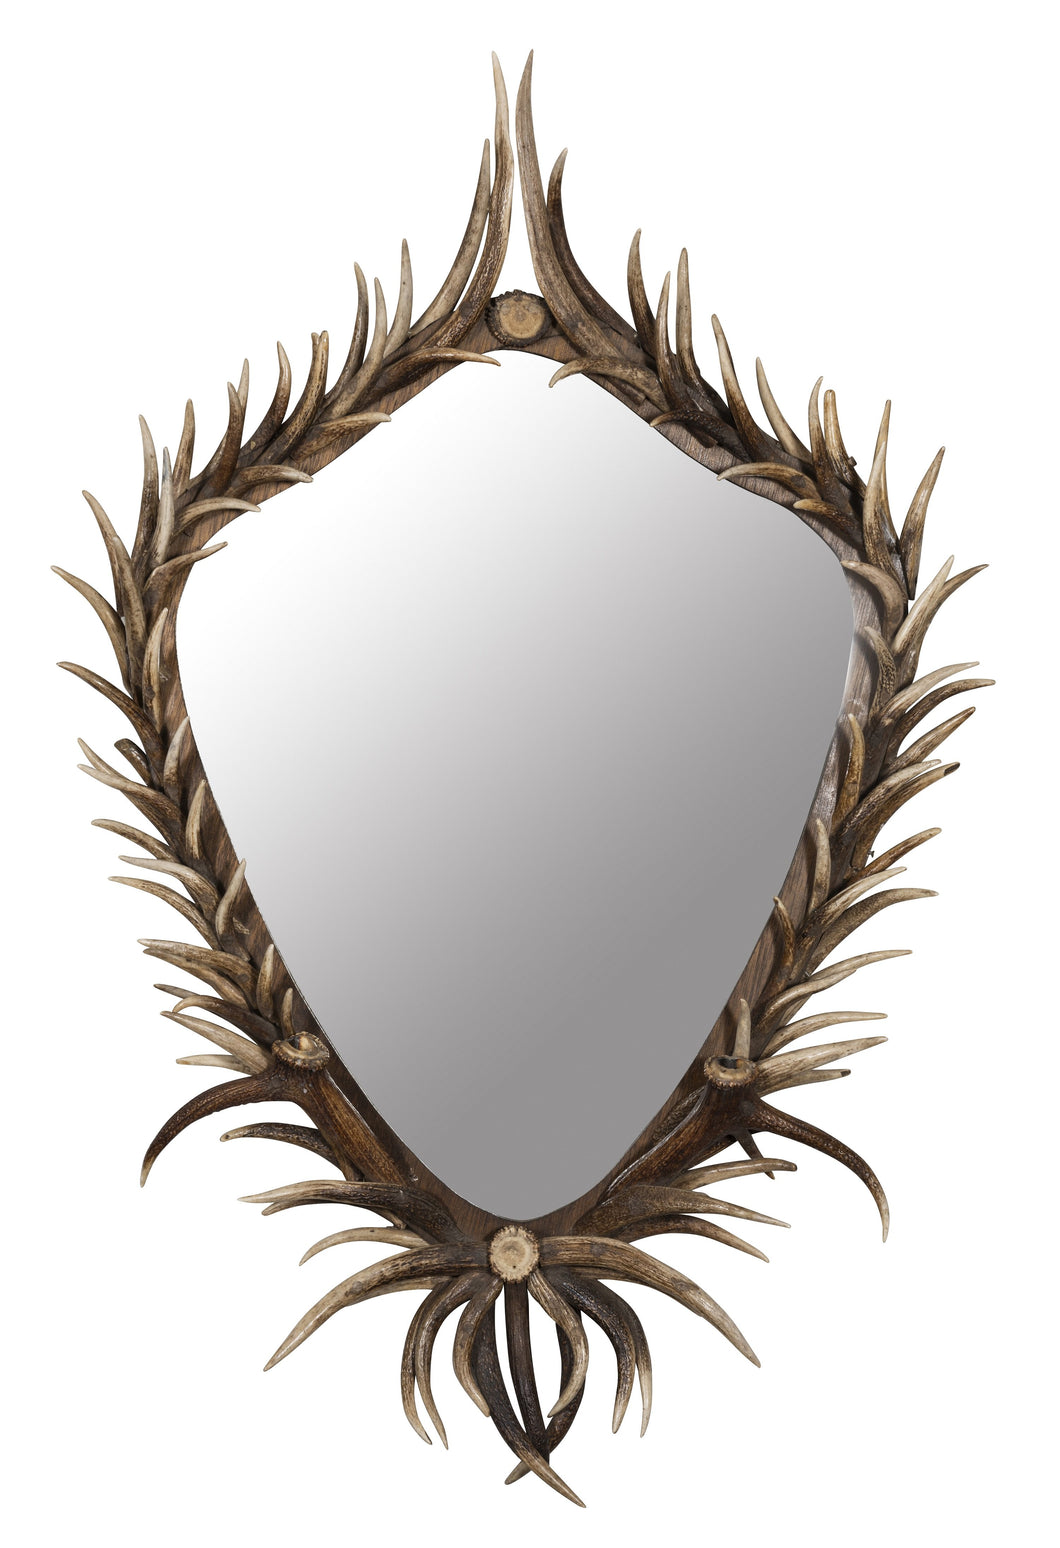 A Red Deer Antler Mirror